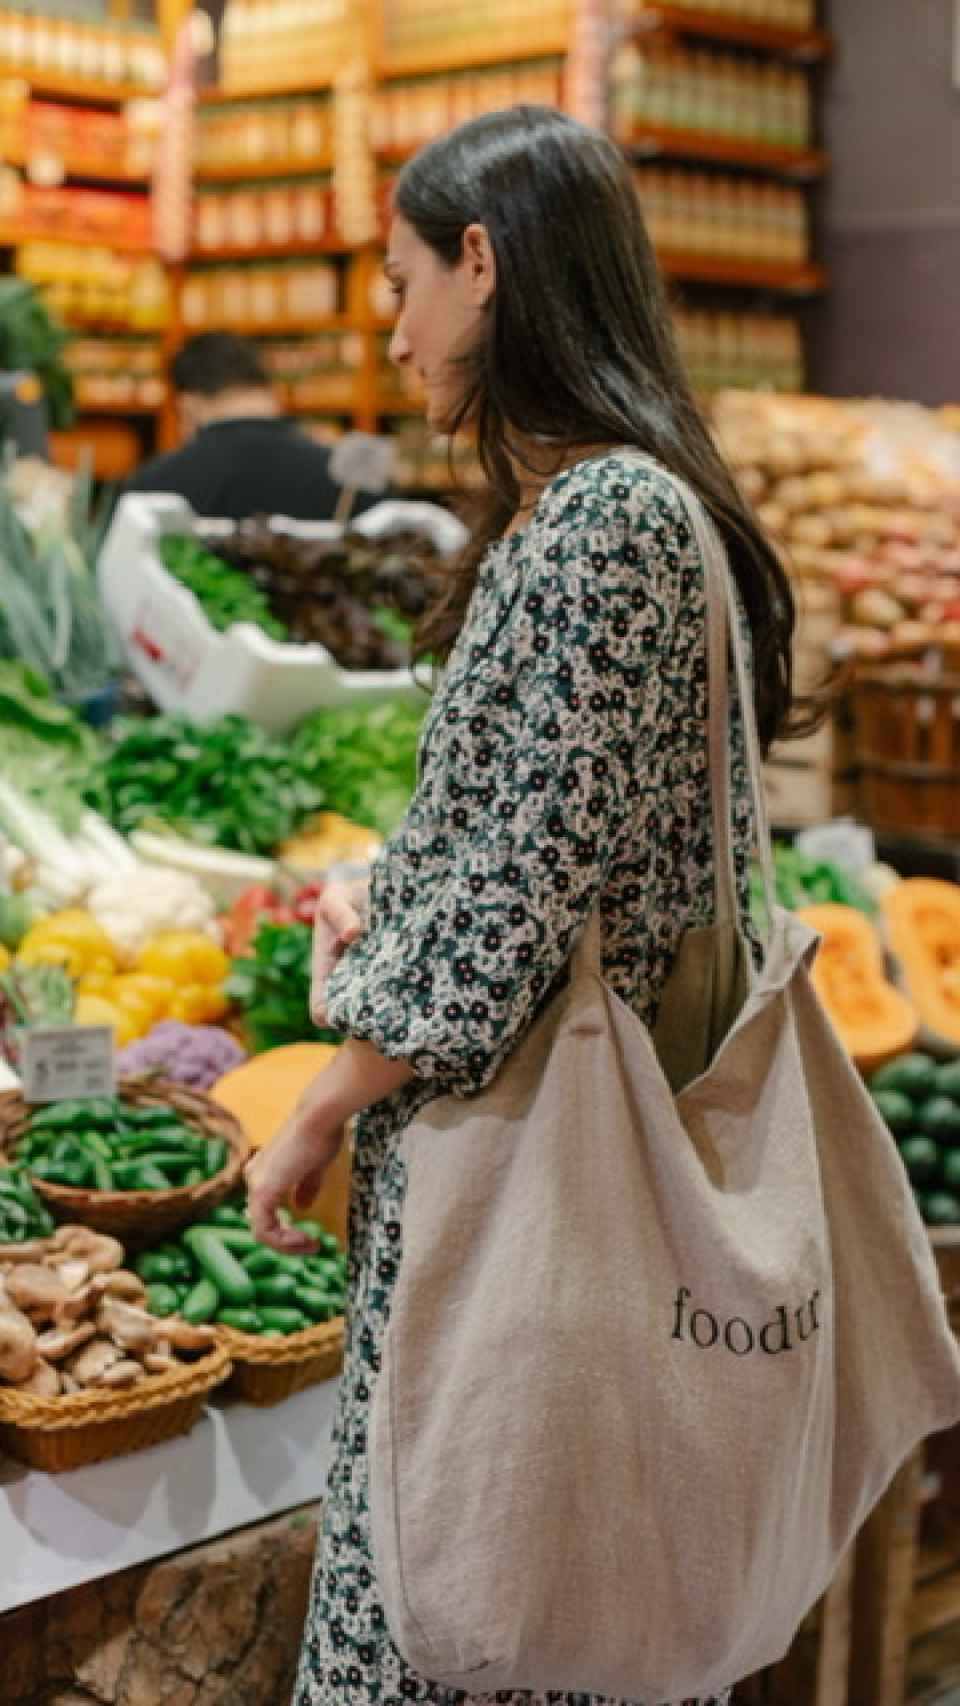 Paola Freire en el mercado comprando.